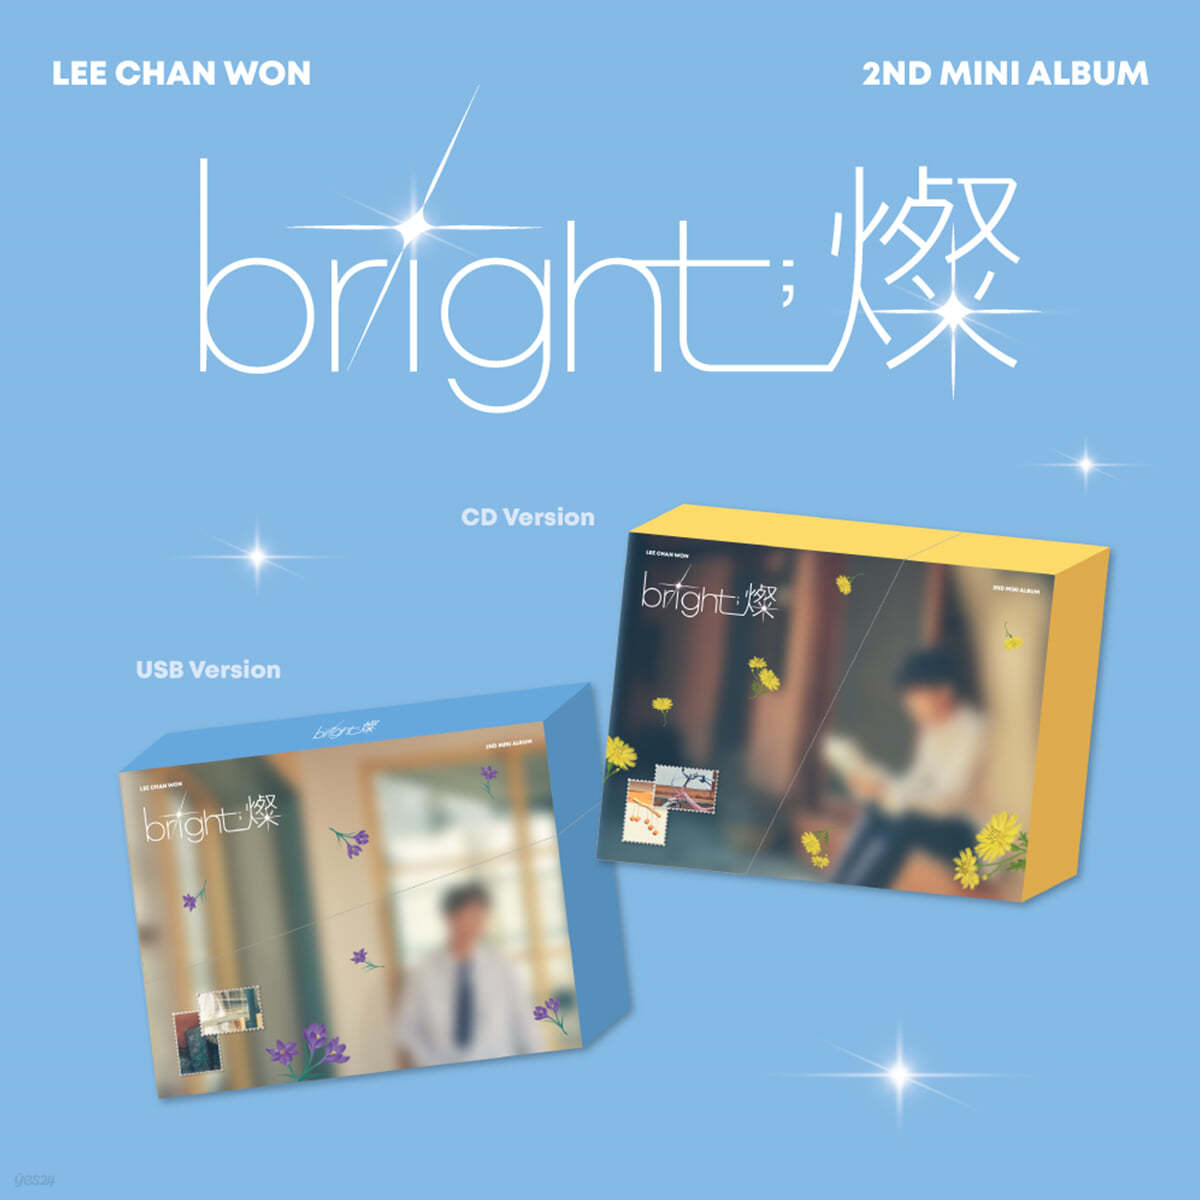 이찬원 - 미니앨범 2집 : bright;燦 [Photobook + USB]